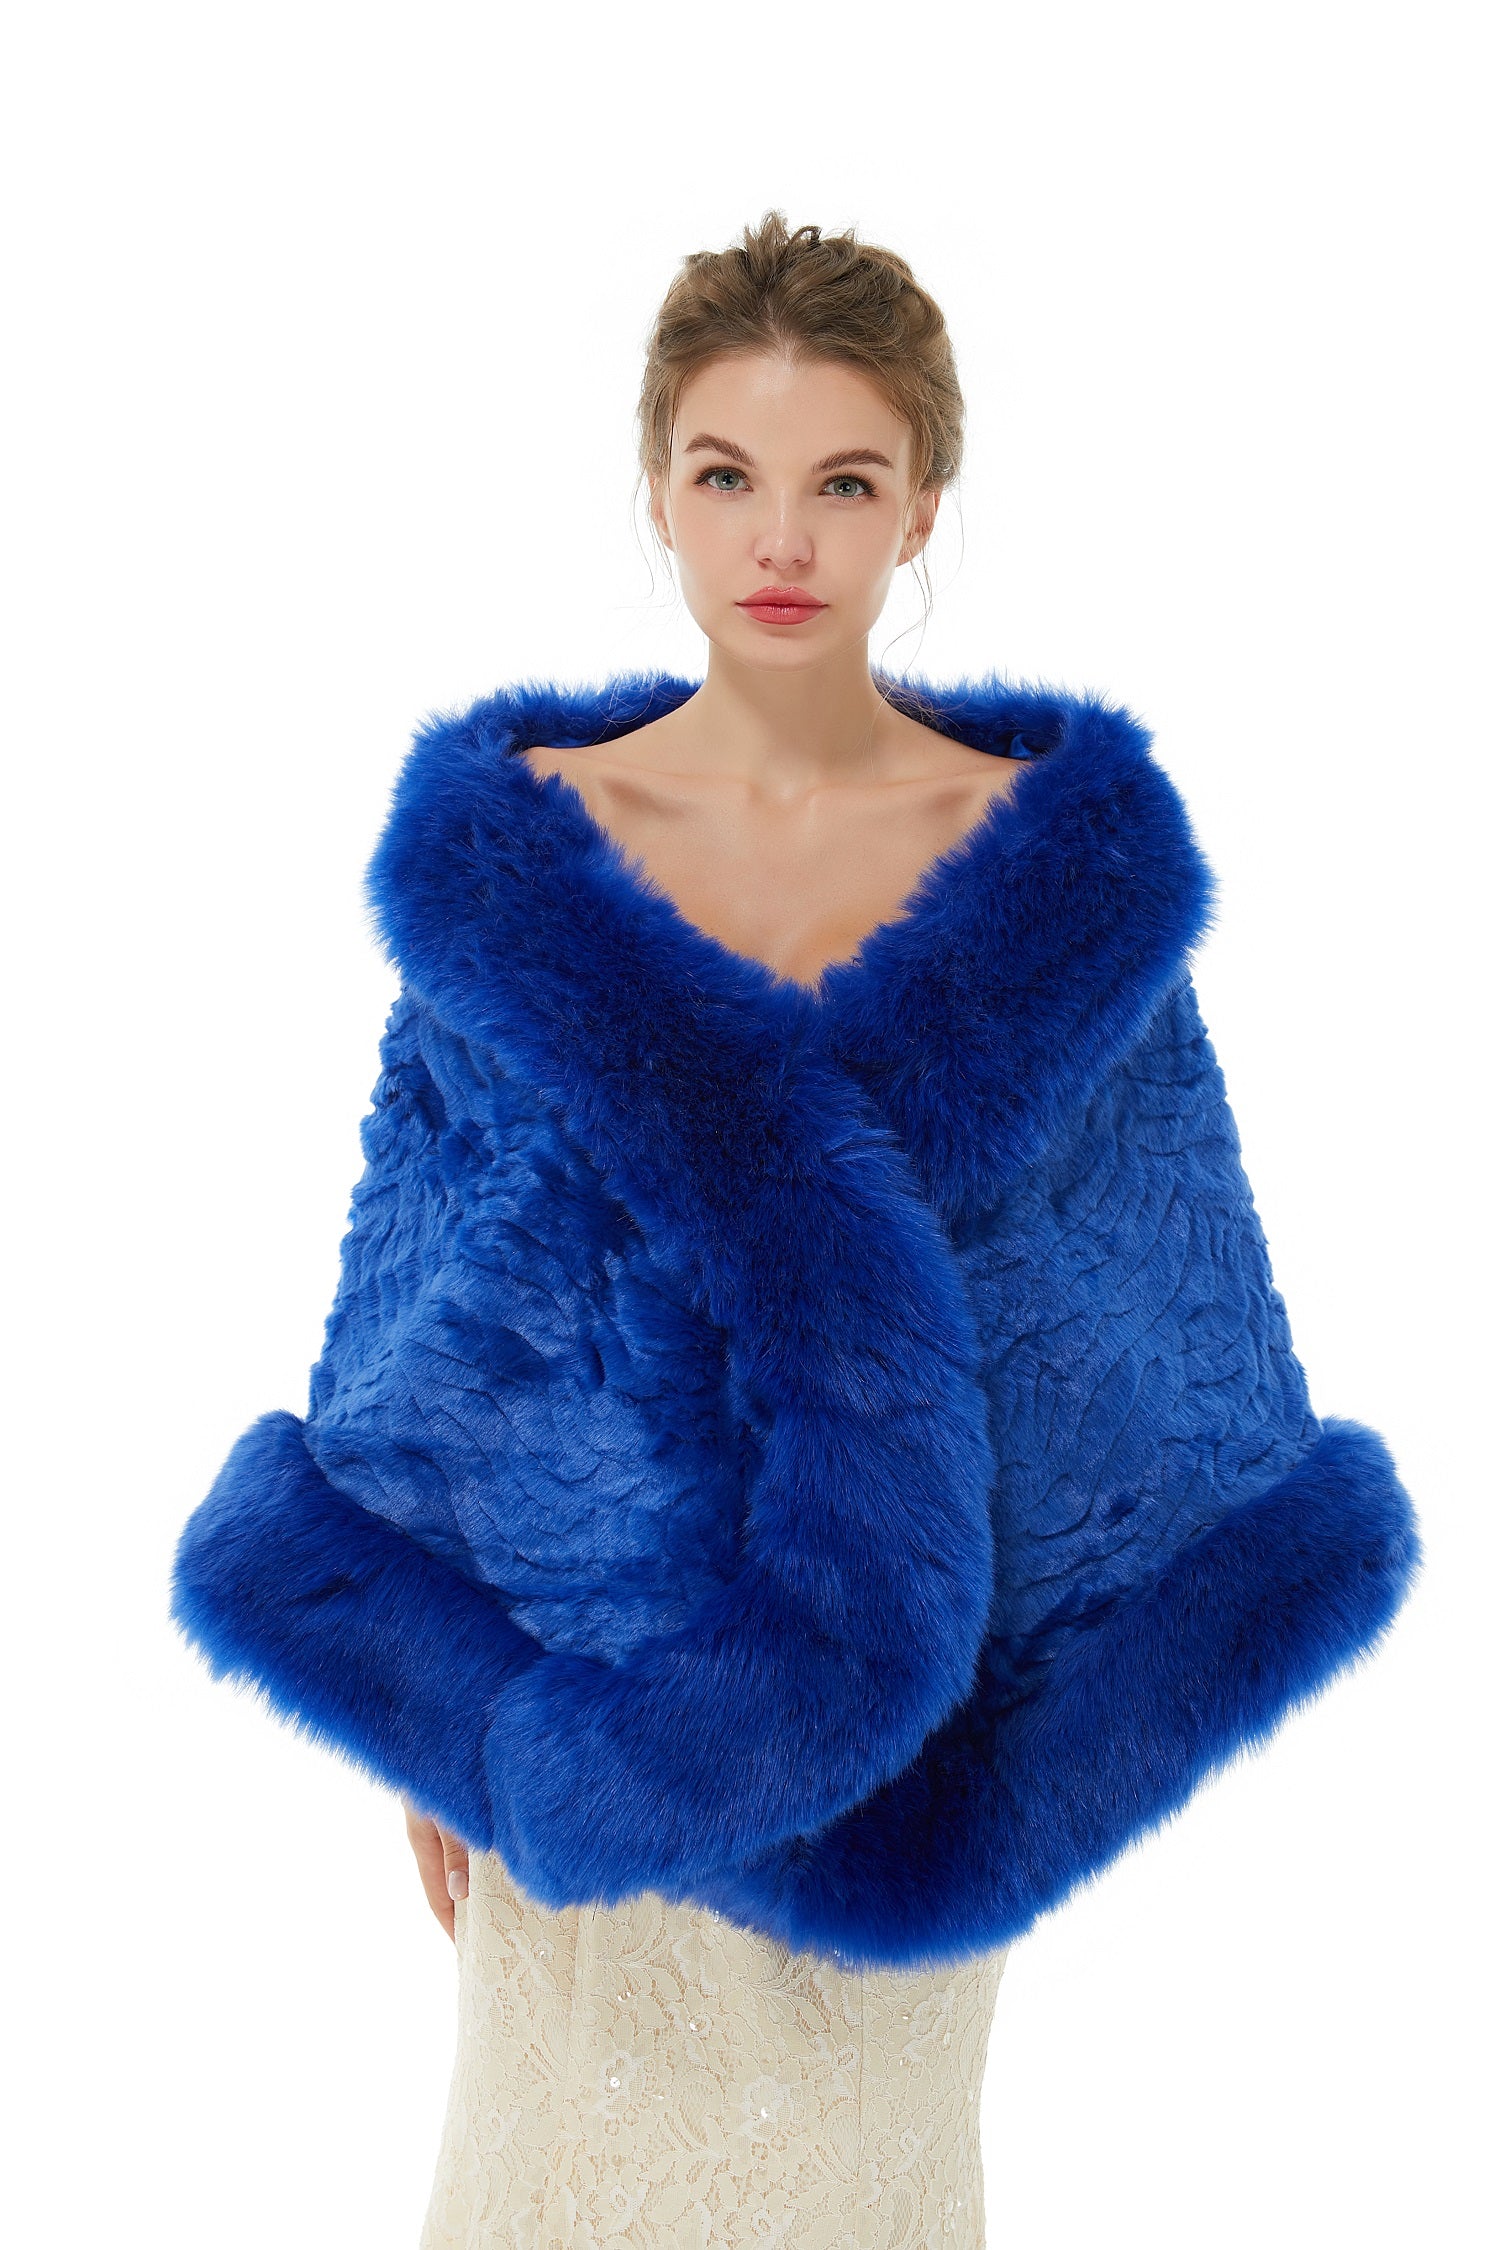 Bellasprom Fashion Royal Blue Winter Faux Fur Wedding Wrap Bellasprom